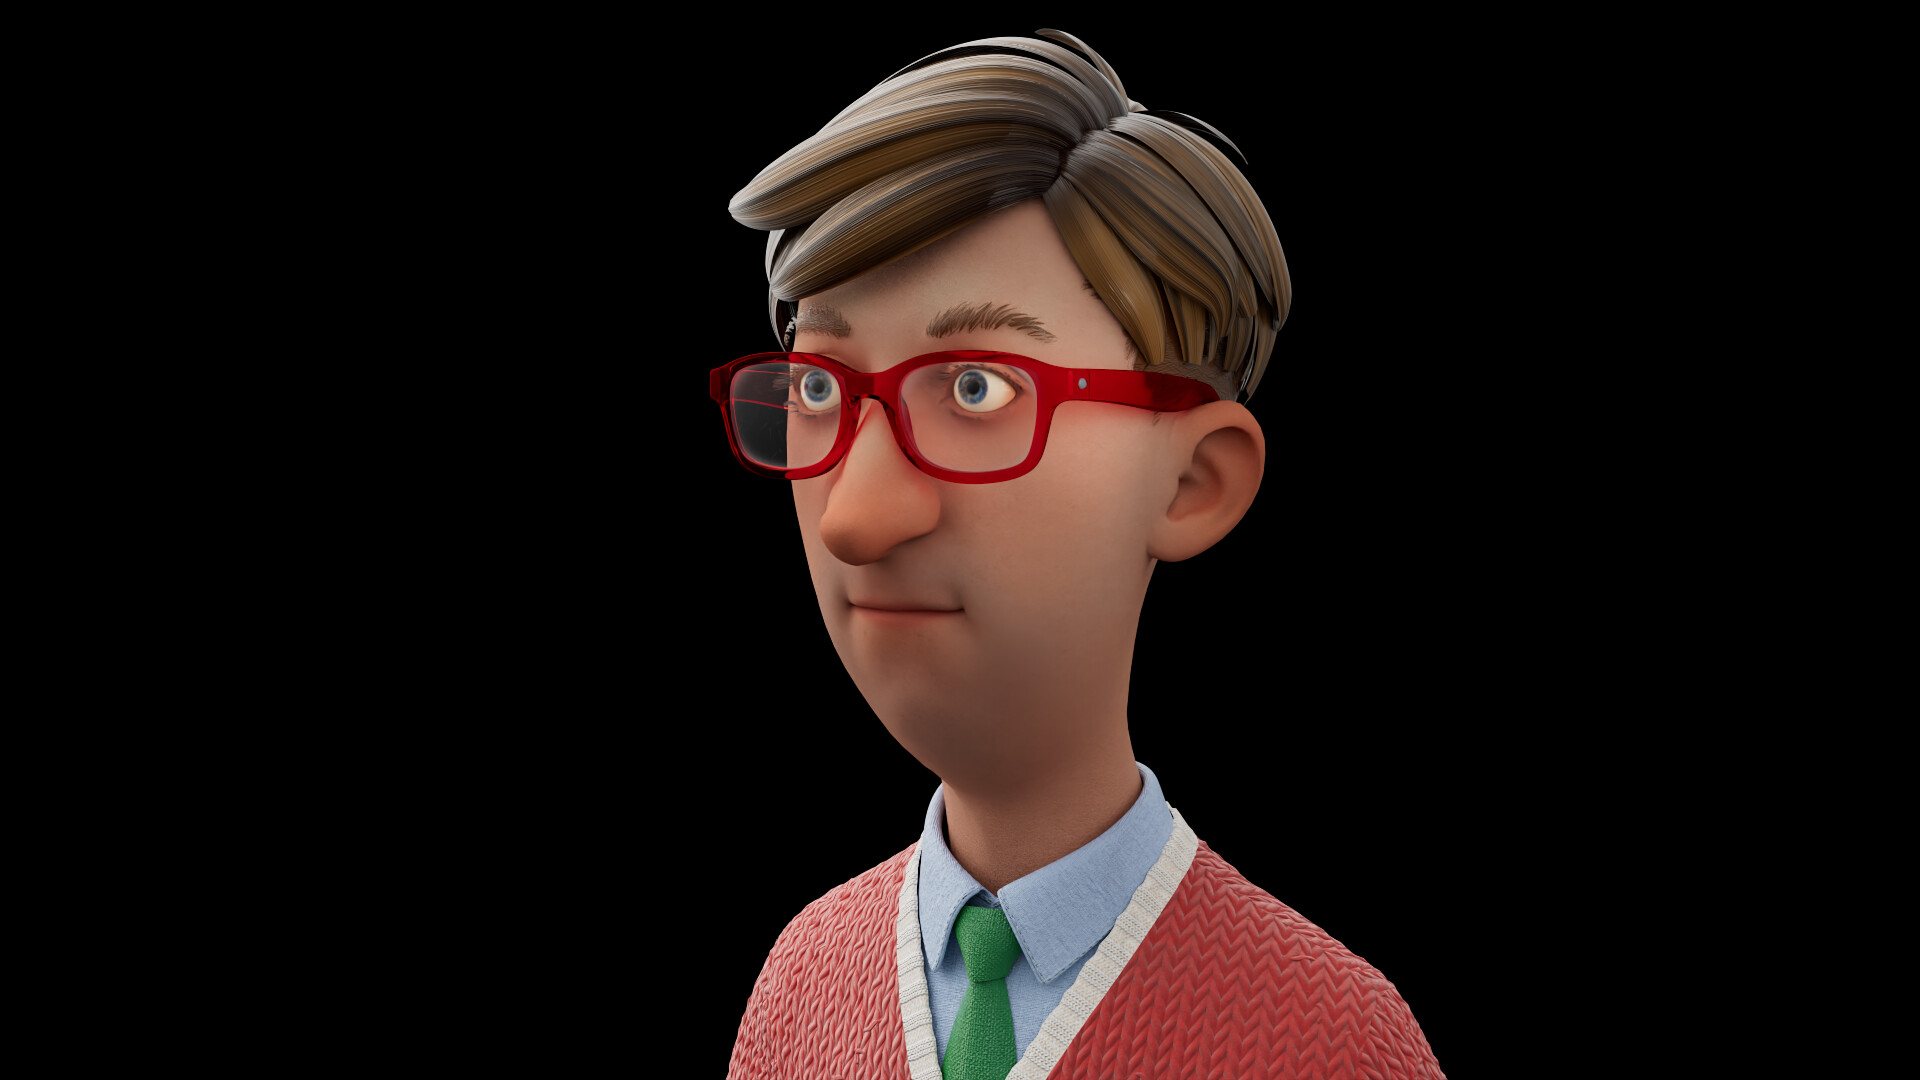 ArtStation - Cartoon Office Guy (texture)